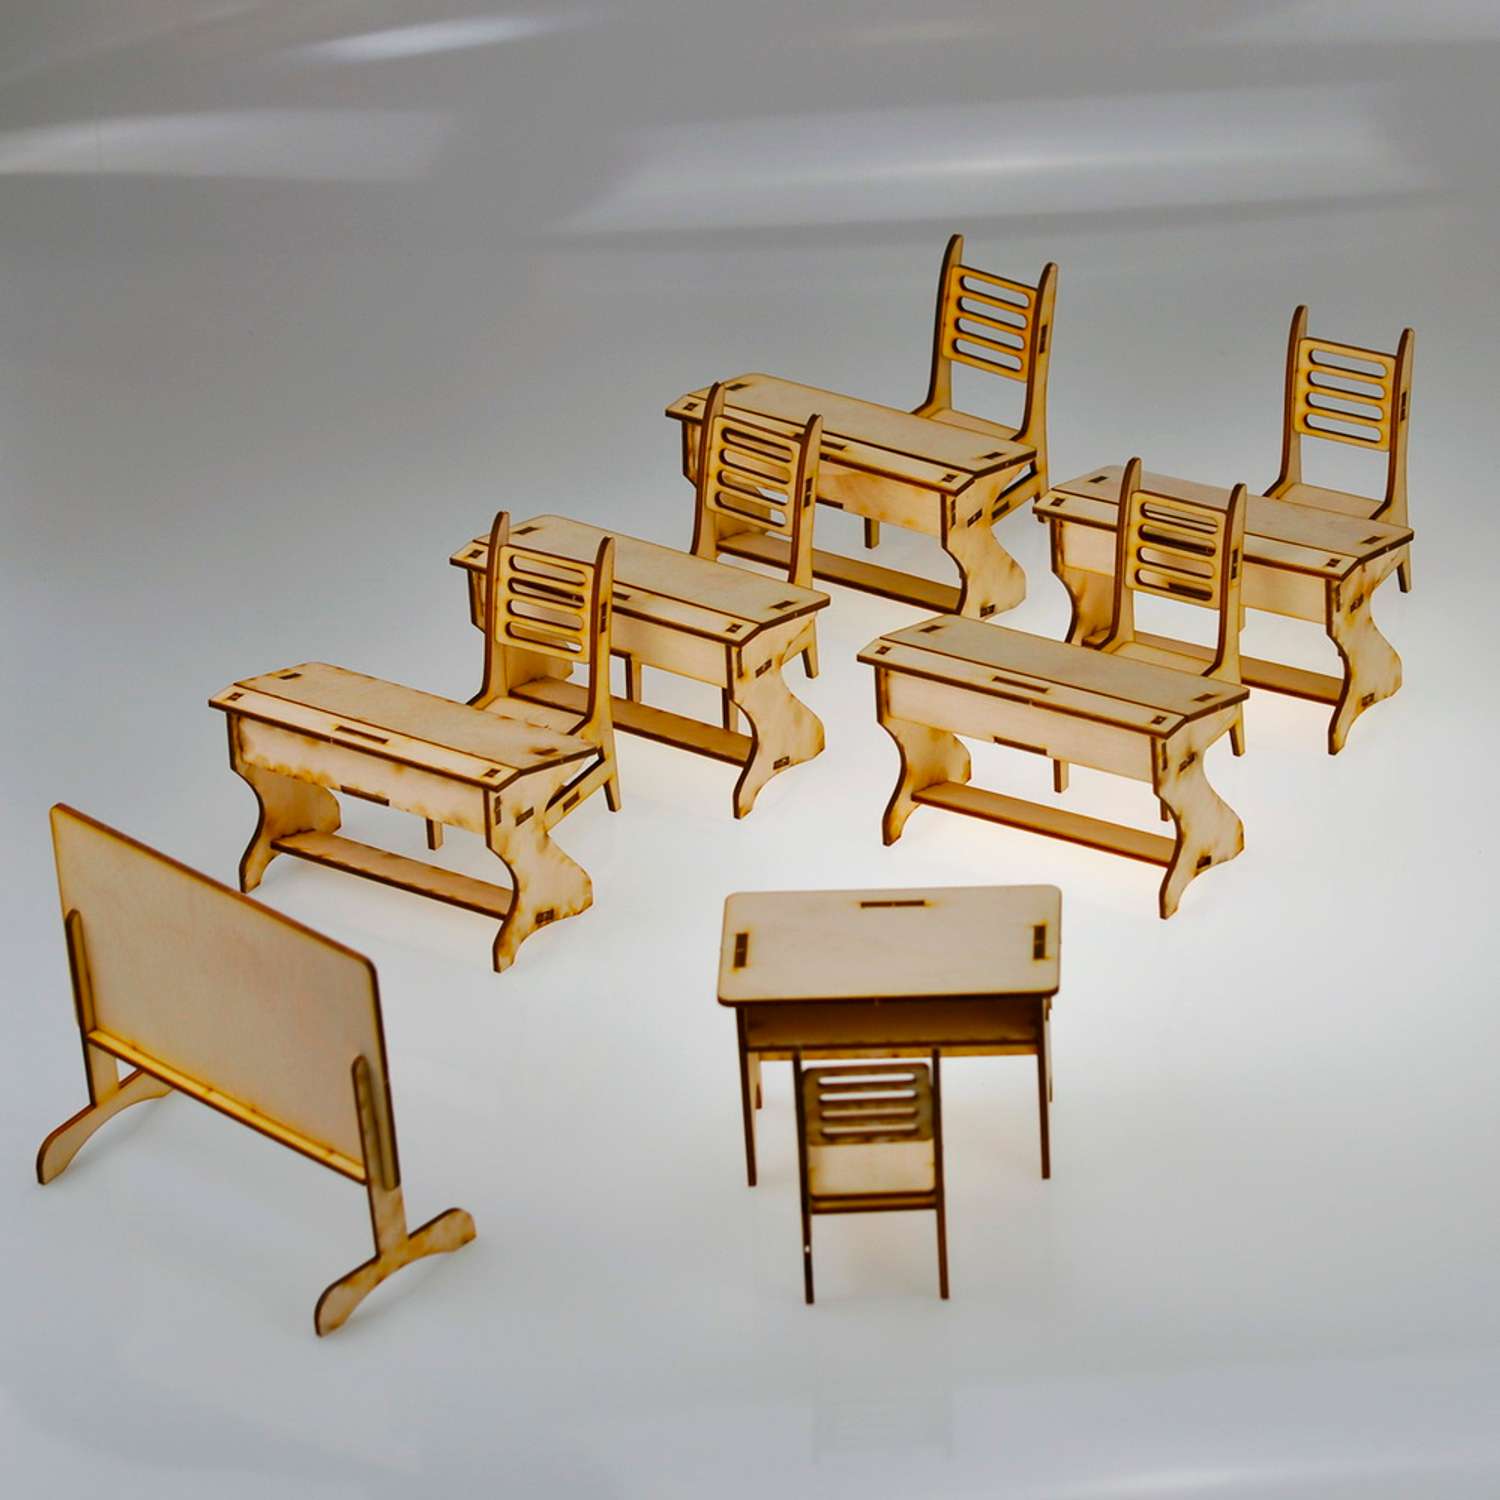 Игровой деревянный класс Amazwood 5 парт- учительский стол - доска - 6 стульев - 6 кукол AW1006 - фото 9